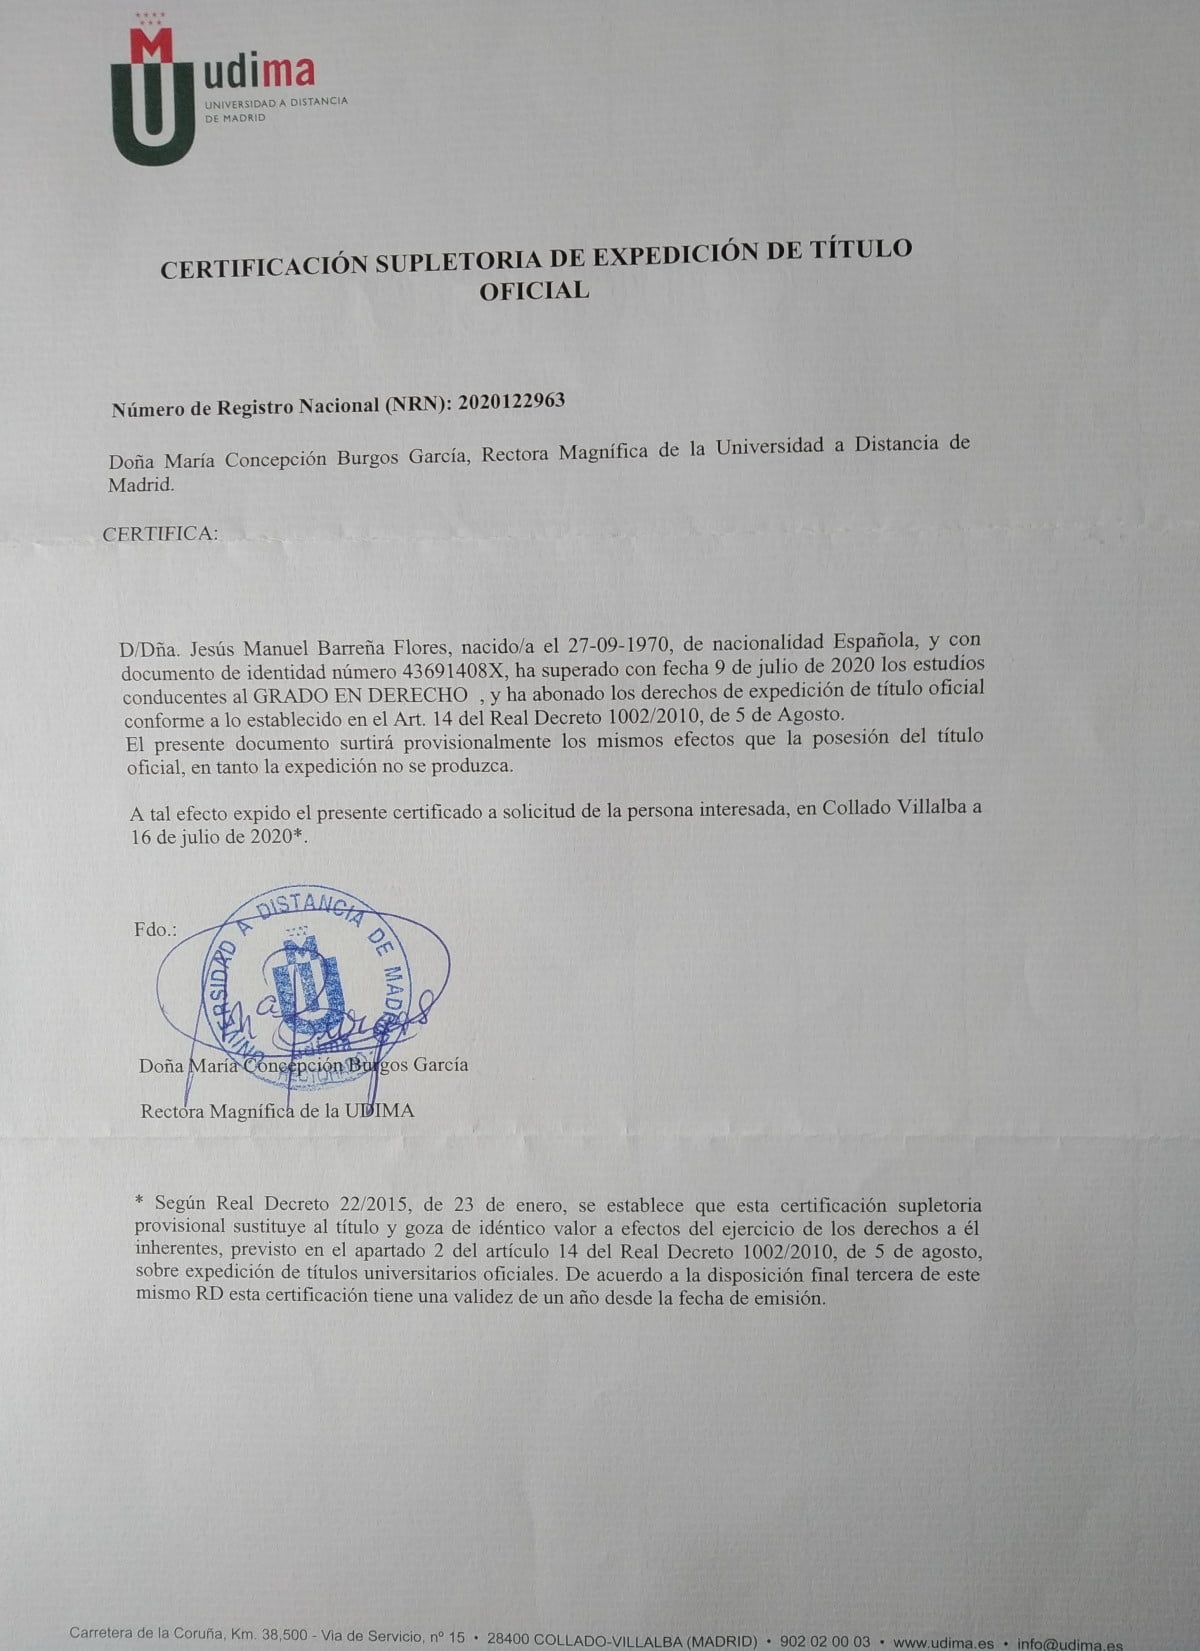 Certificación de la expedición del título de los estudios de Grado de Derecho para Jesús Barreña Flores.